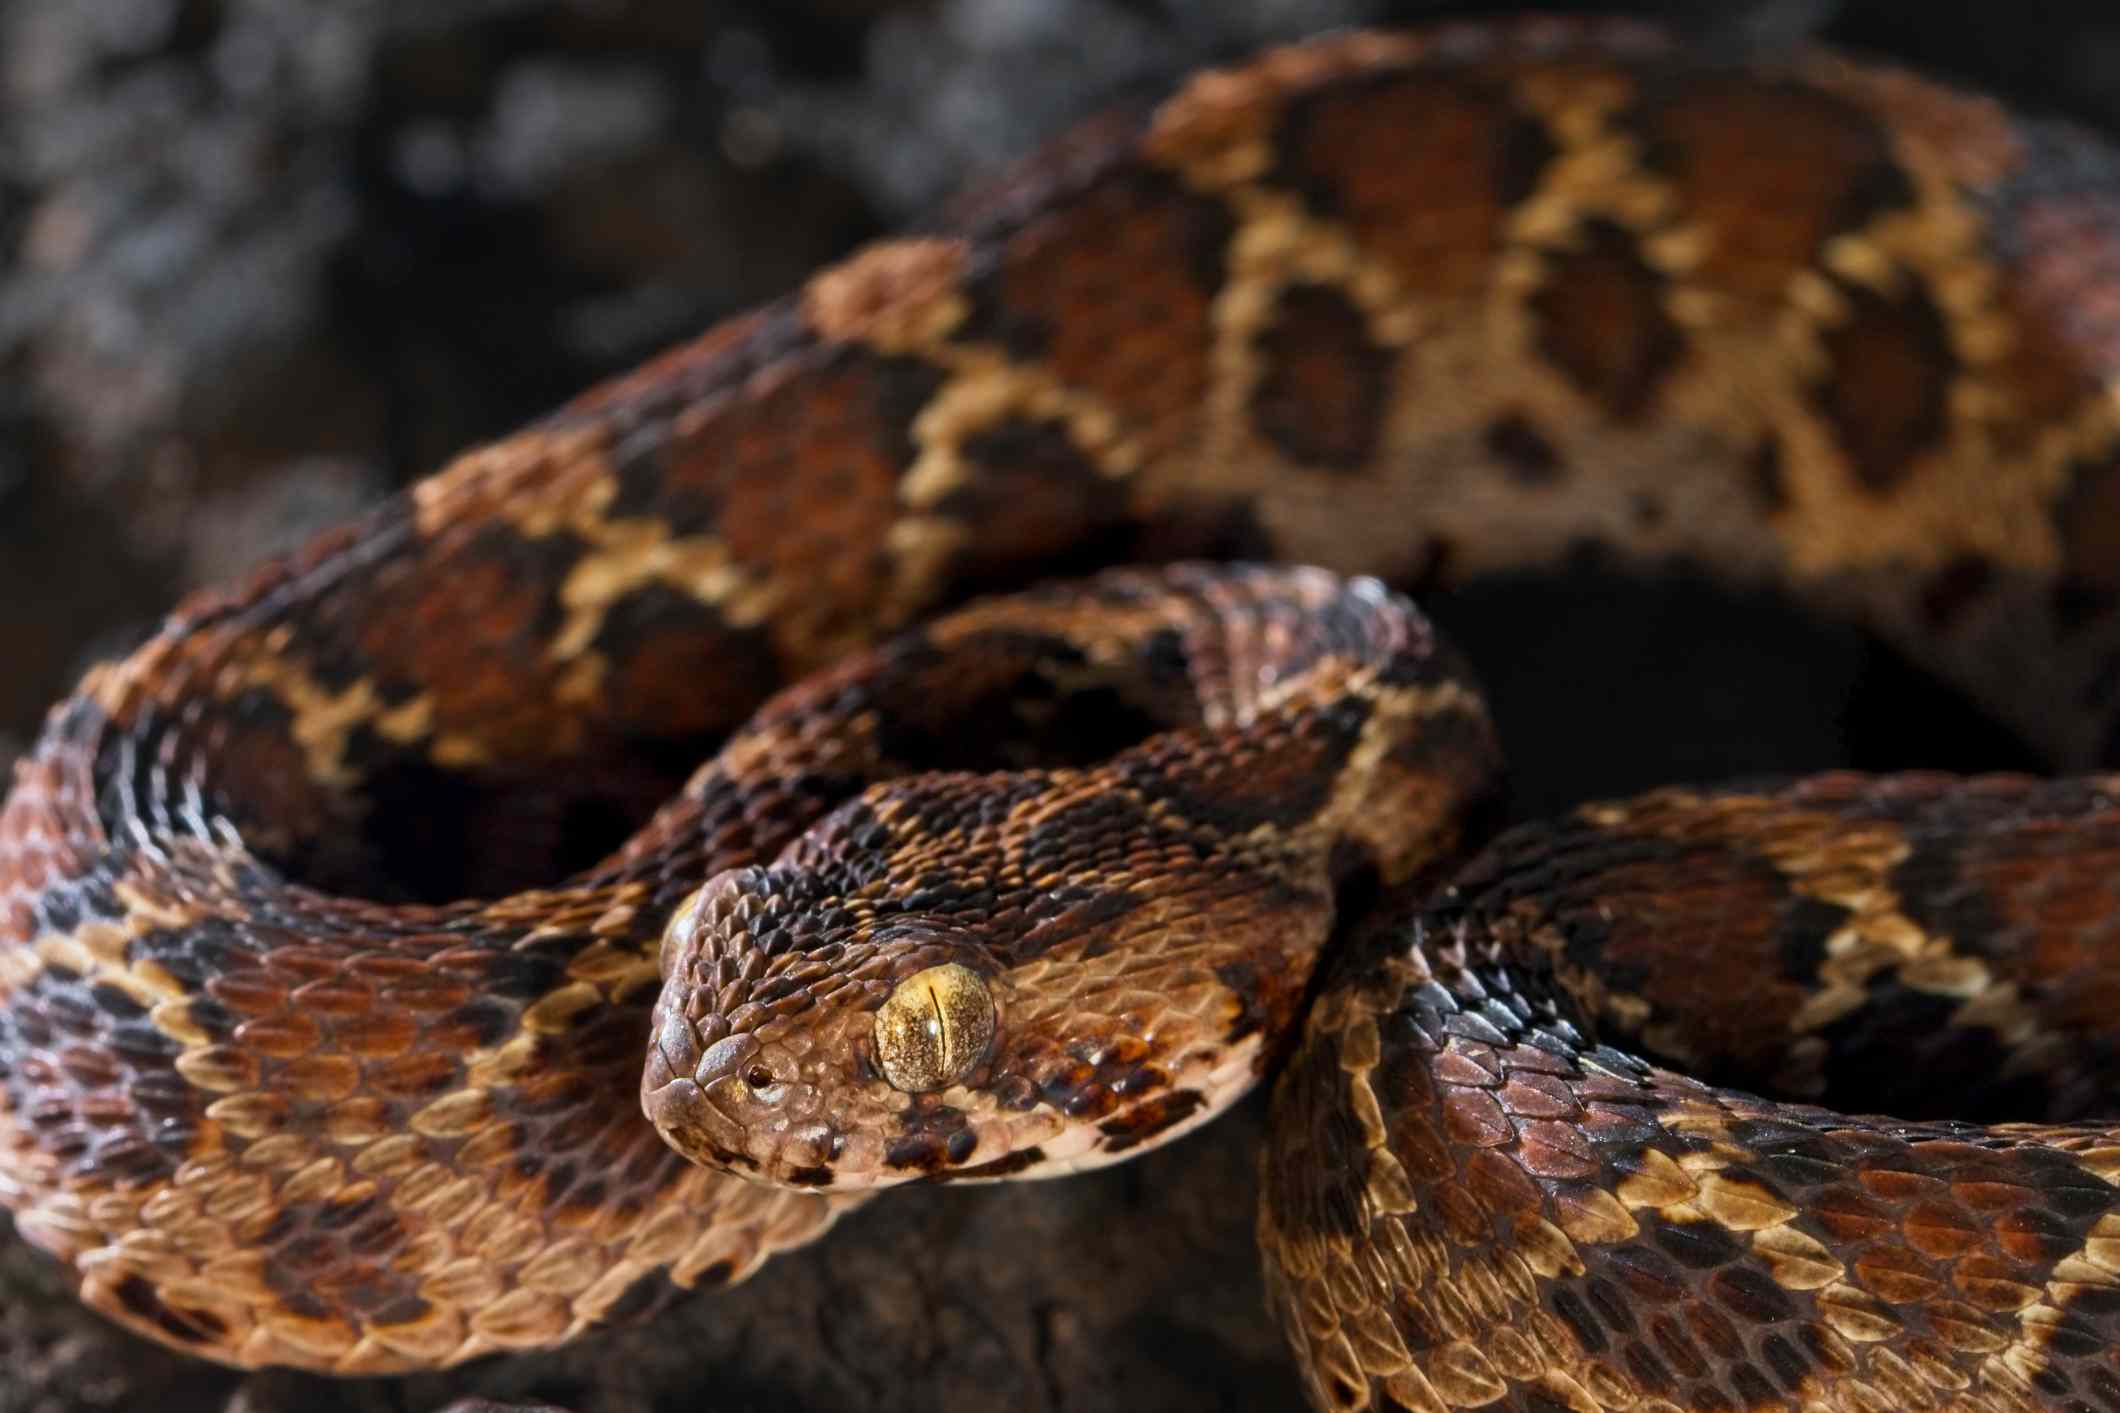 锯状鳞片的蝮蛇，有棕色、黑色和奶油色的菱形花纹。“width=